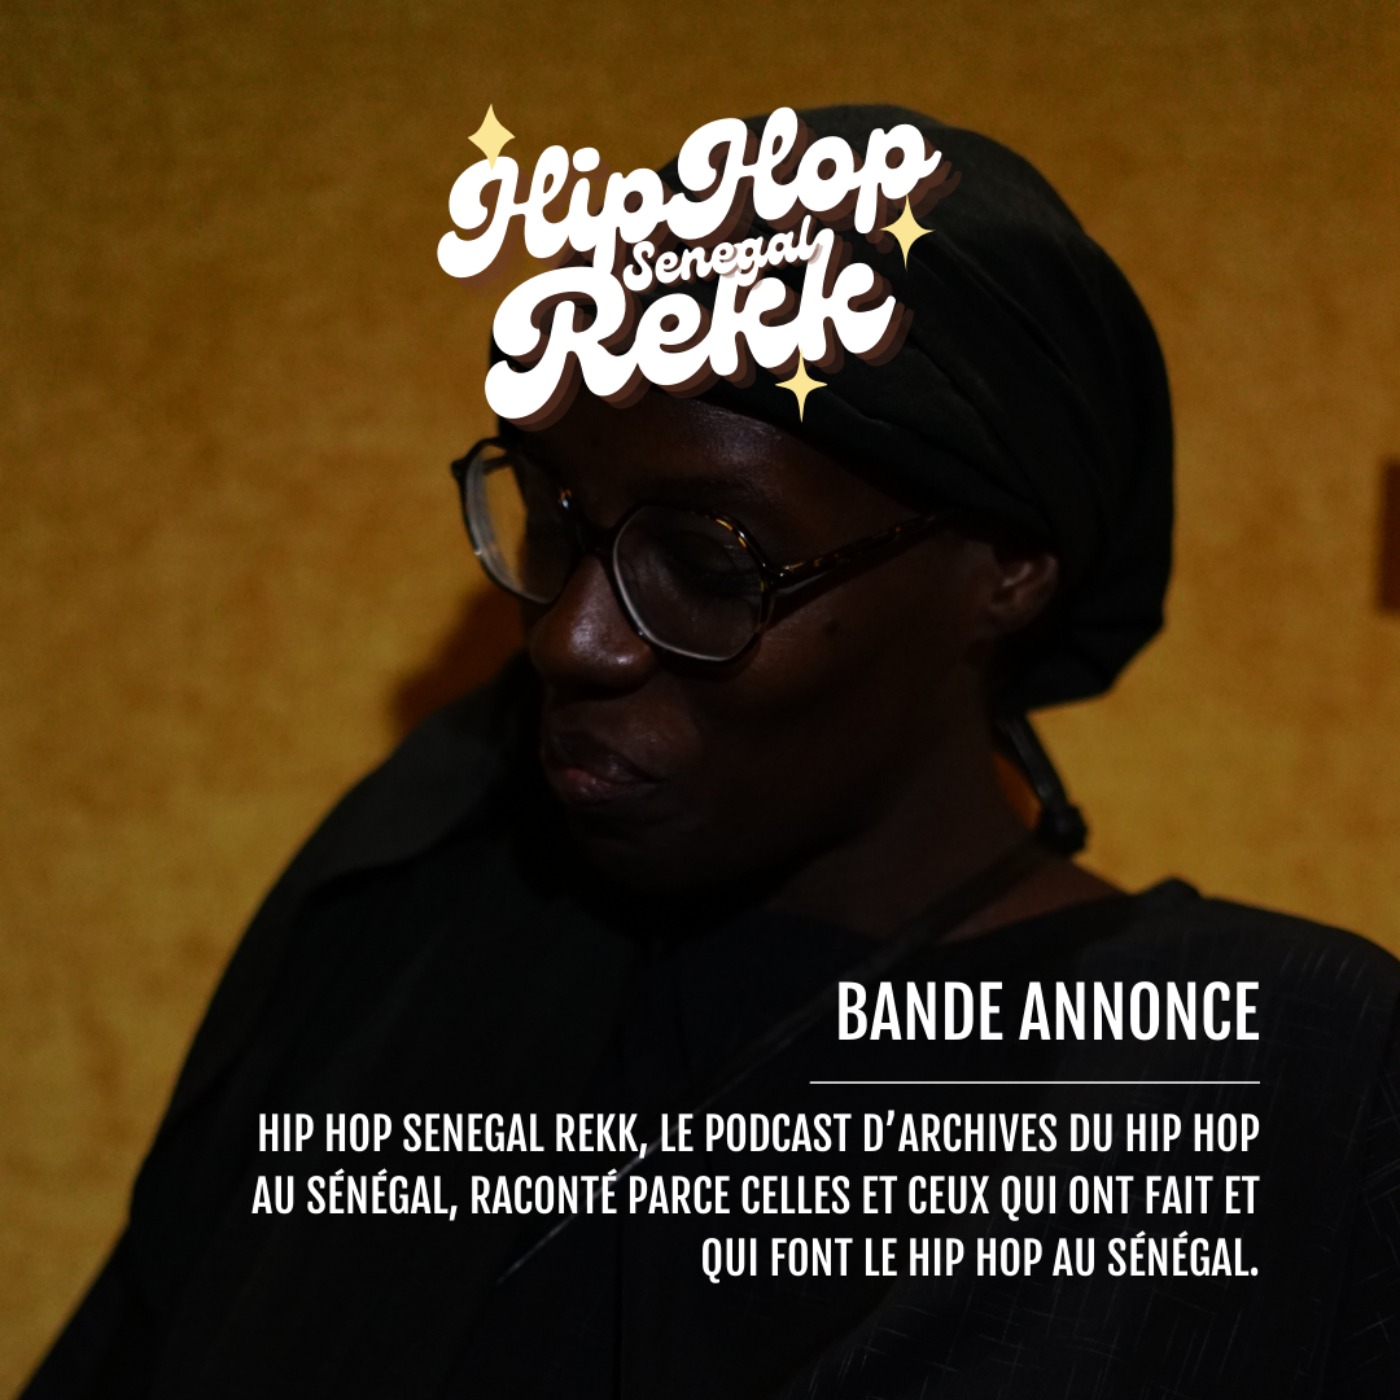 Hip Hop Senegal Rekk, la bande-annonce